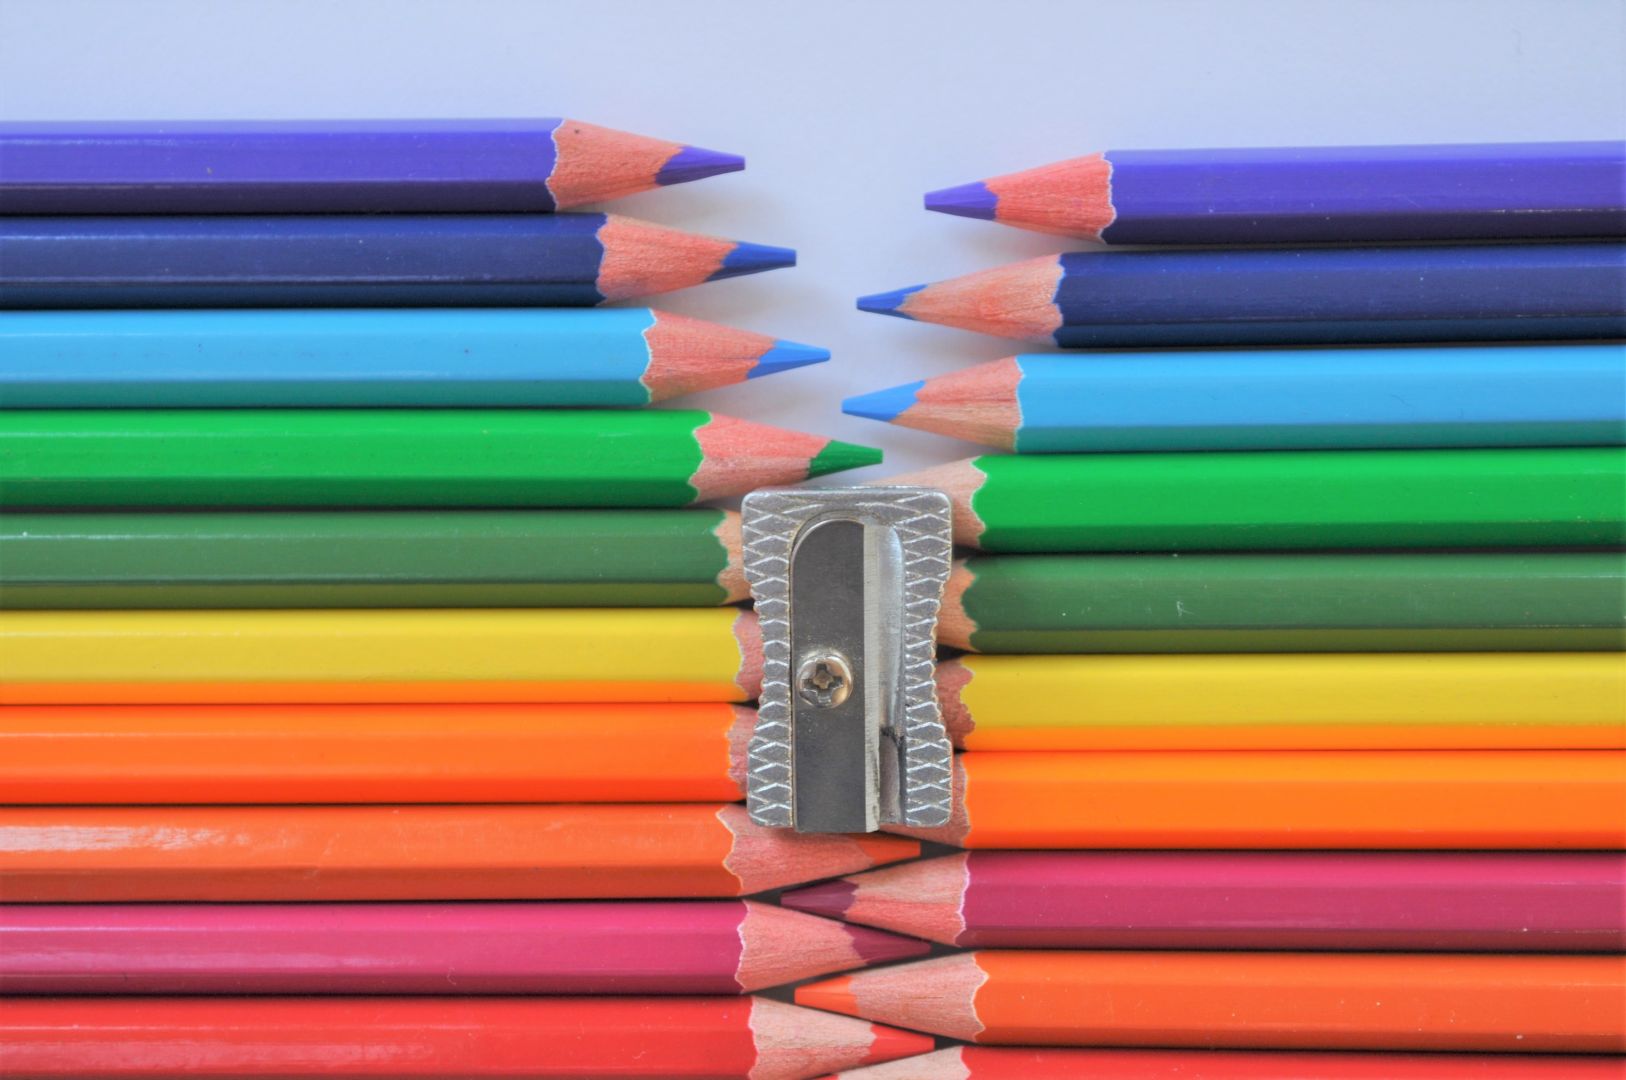 День цветных карандашей картинки. Разные карандаши. День цветных карандашей. Разноцветные карандаши разной длины. Сточенный карандаш.